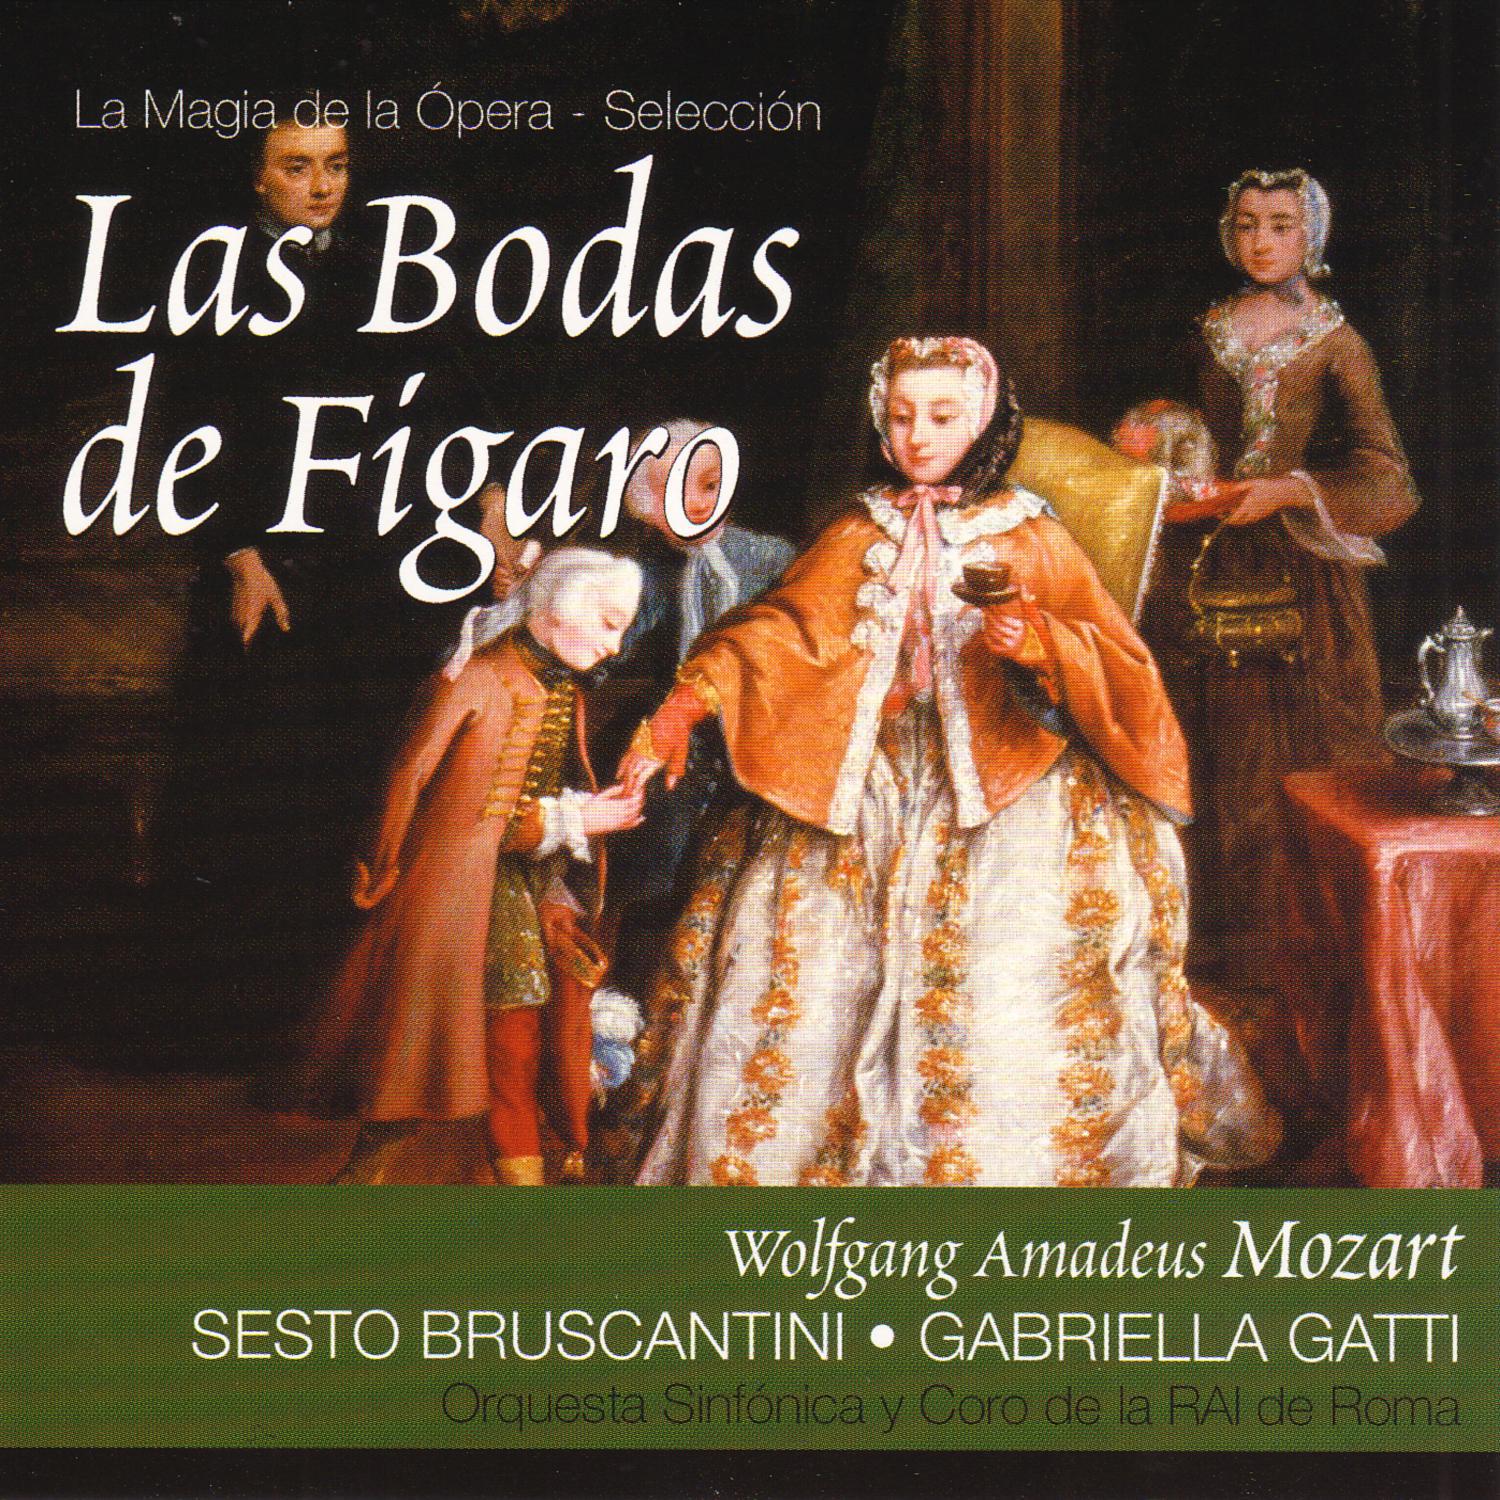 Wolfgang Amadeus Mozart - Las Bodas de Fígaro: Acto I. Aria - 